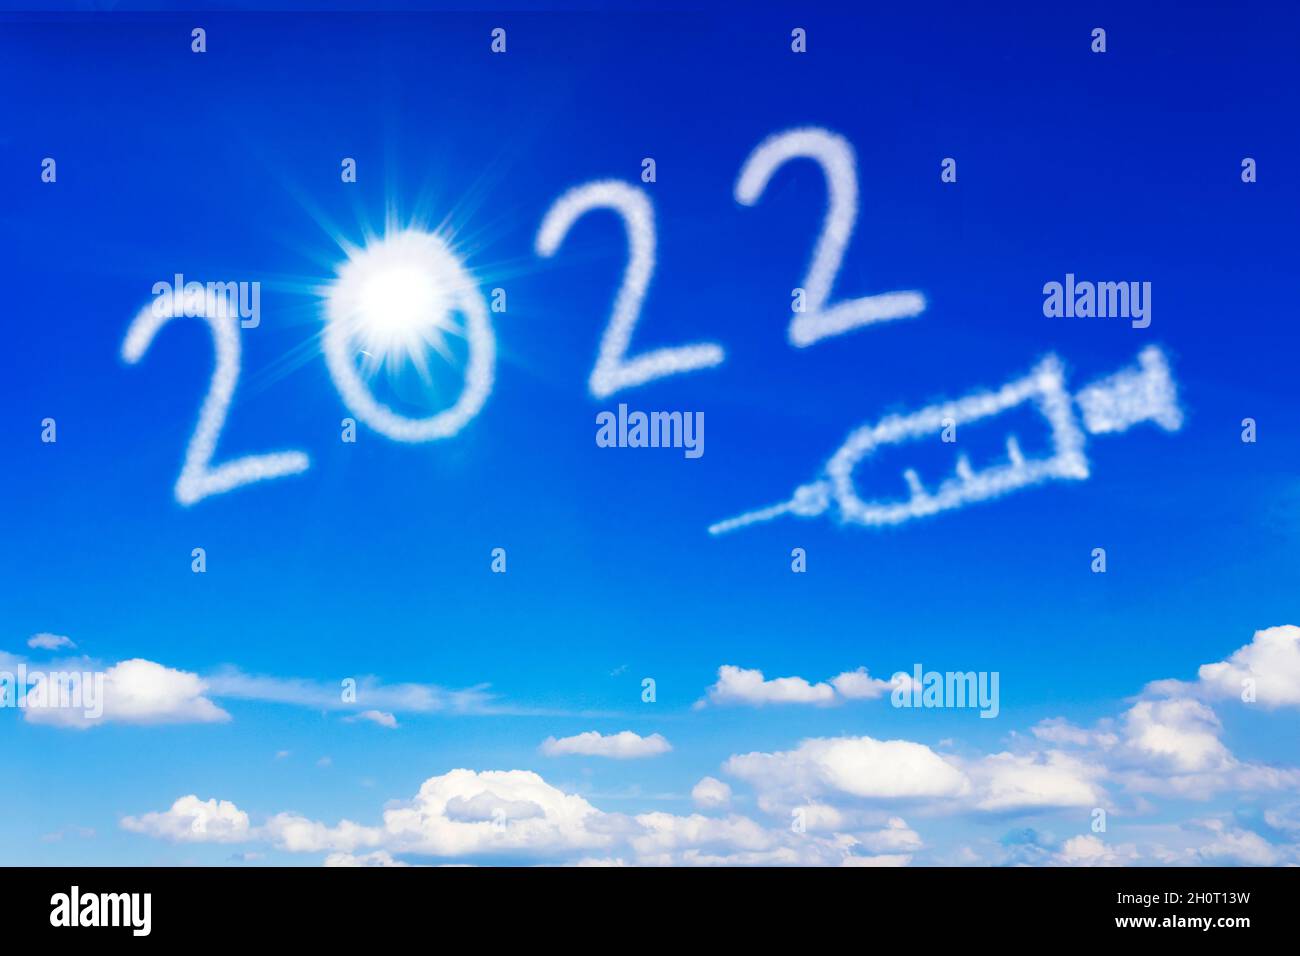 Felice anno nuovo concetto. Sole luminoso, numero 2022 e un'icona a siringa sul cielo blu, che simboleggia una fine della pandemia covida. Foto Stock